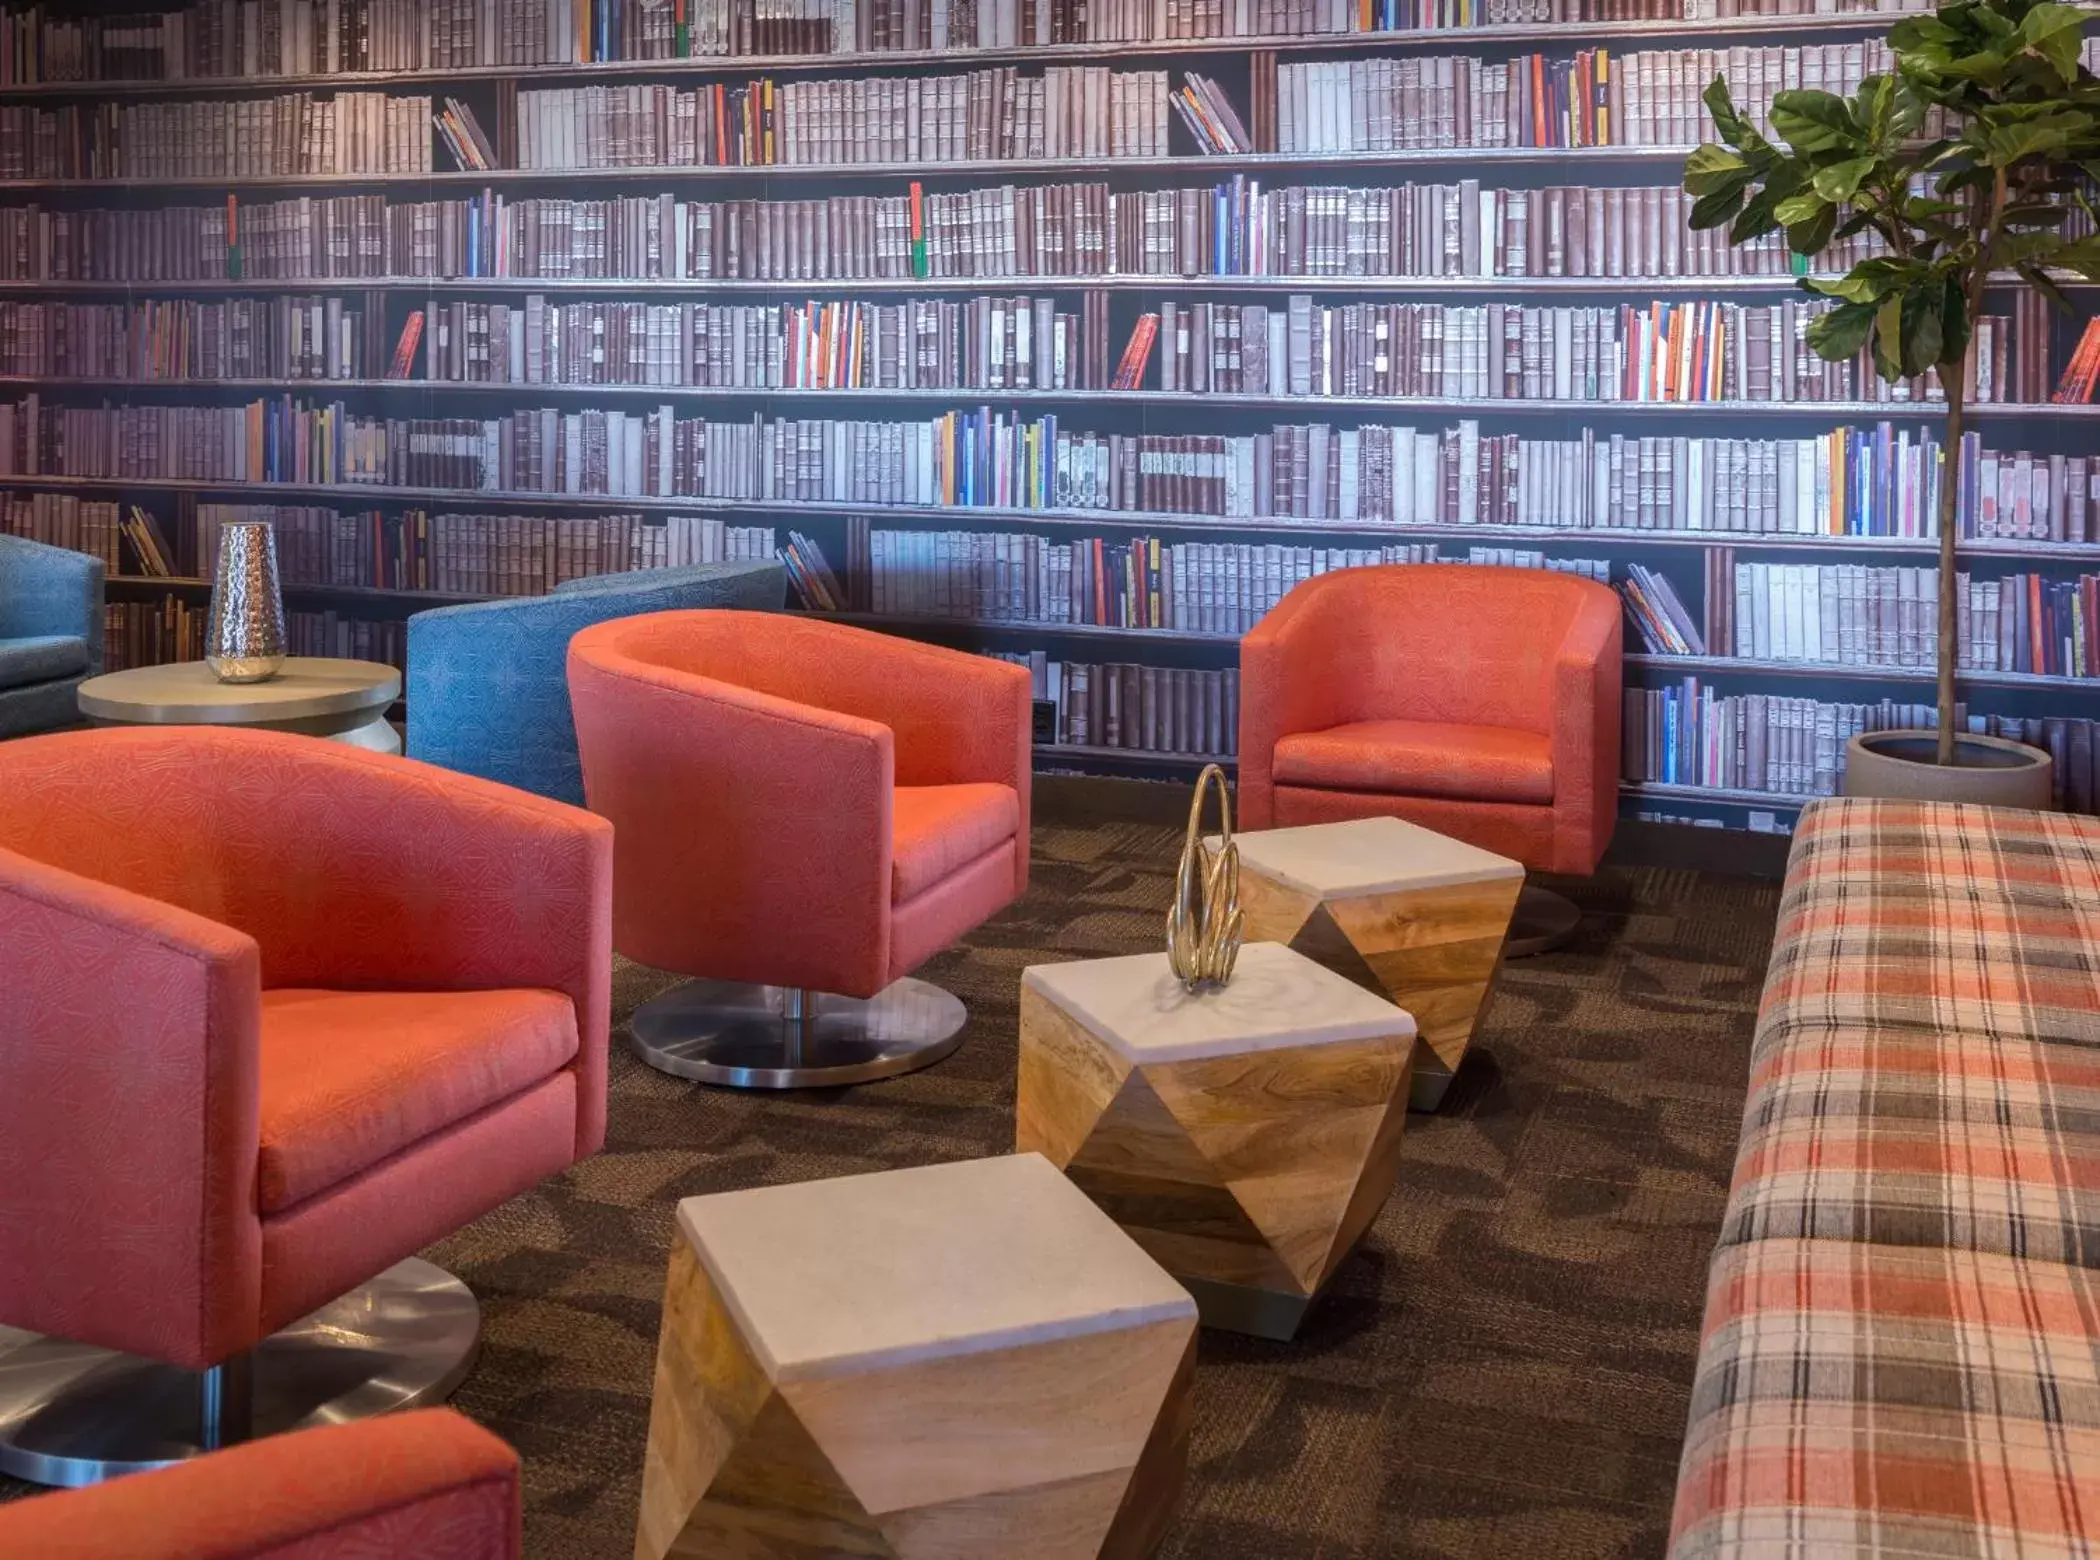 Lobby or reception, Library in LivINN Hotel Cincinnati North/ Sharonville